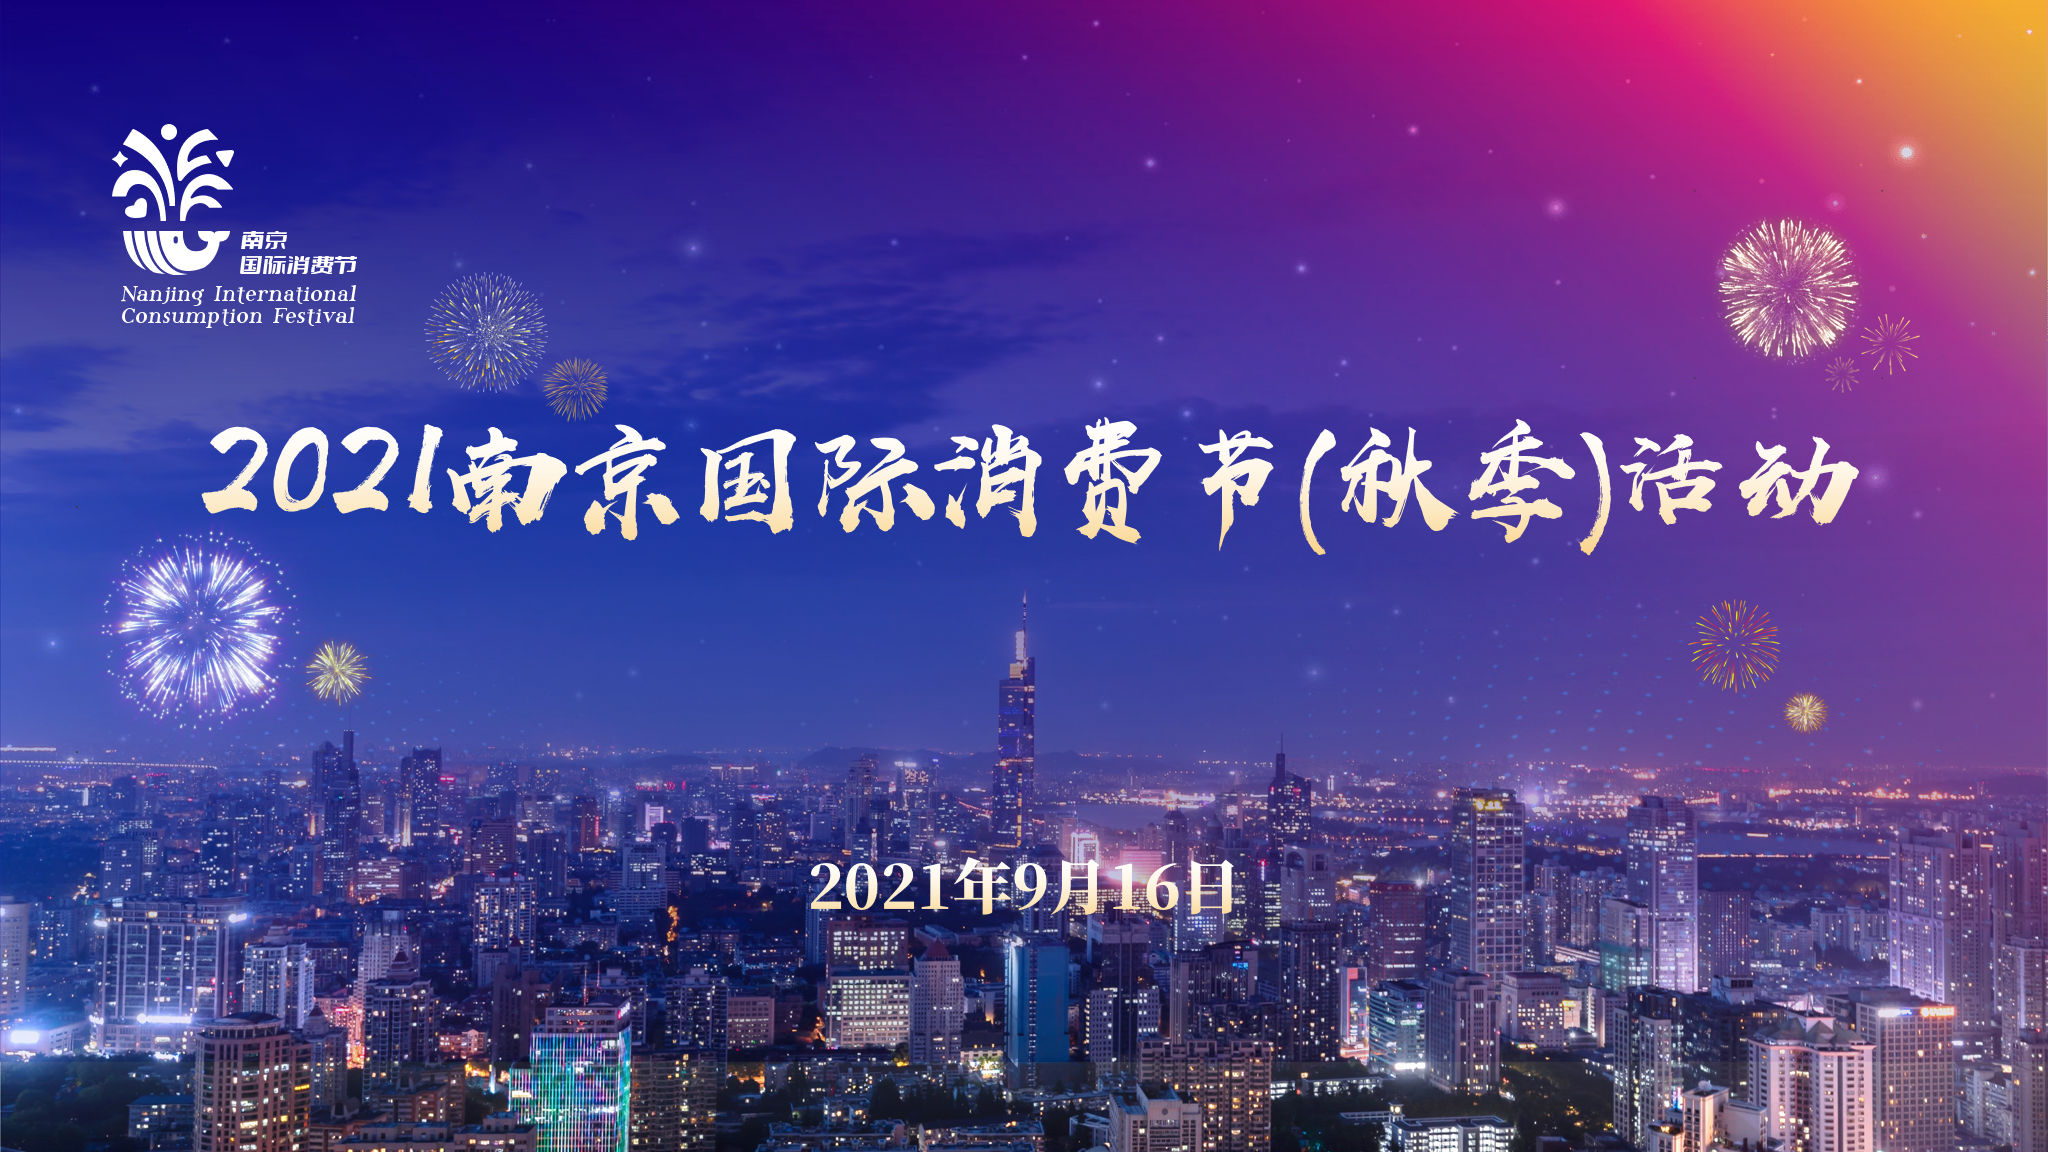 2021南京国际消费节(秋季)活动